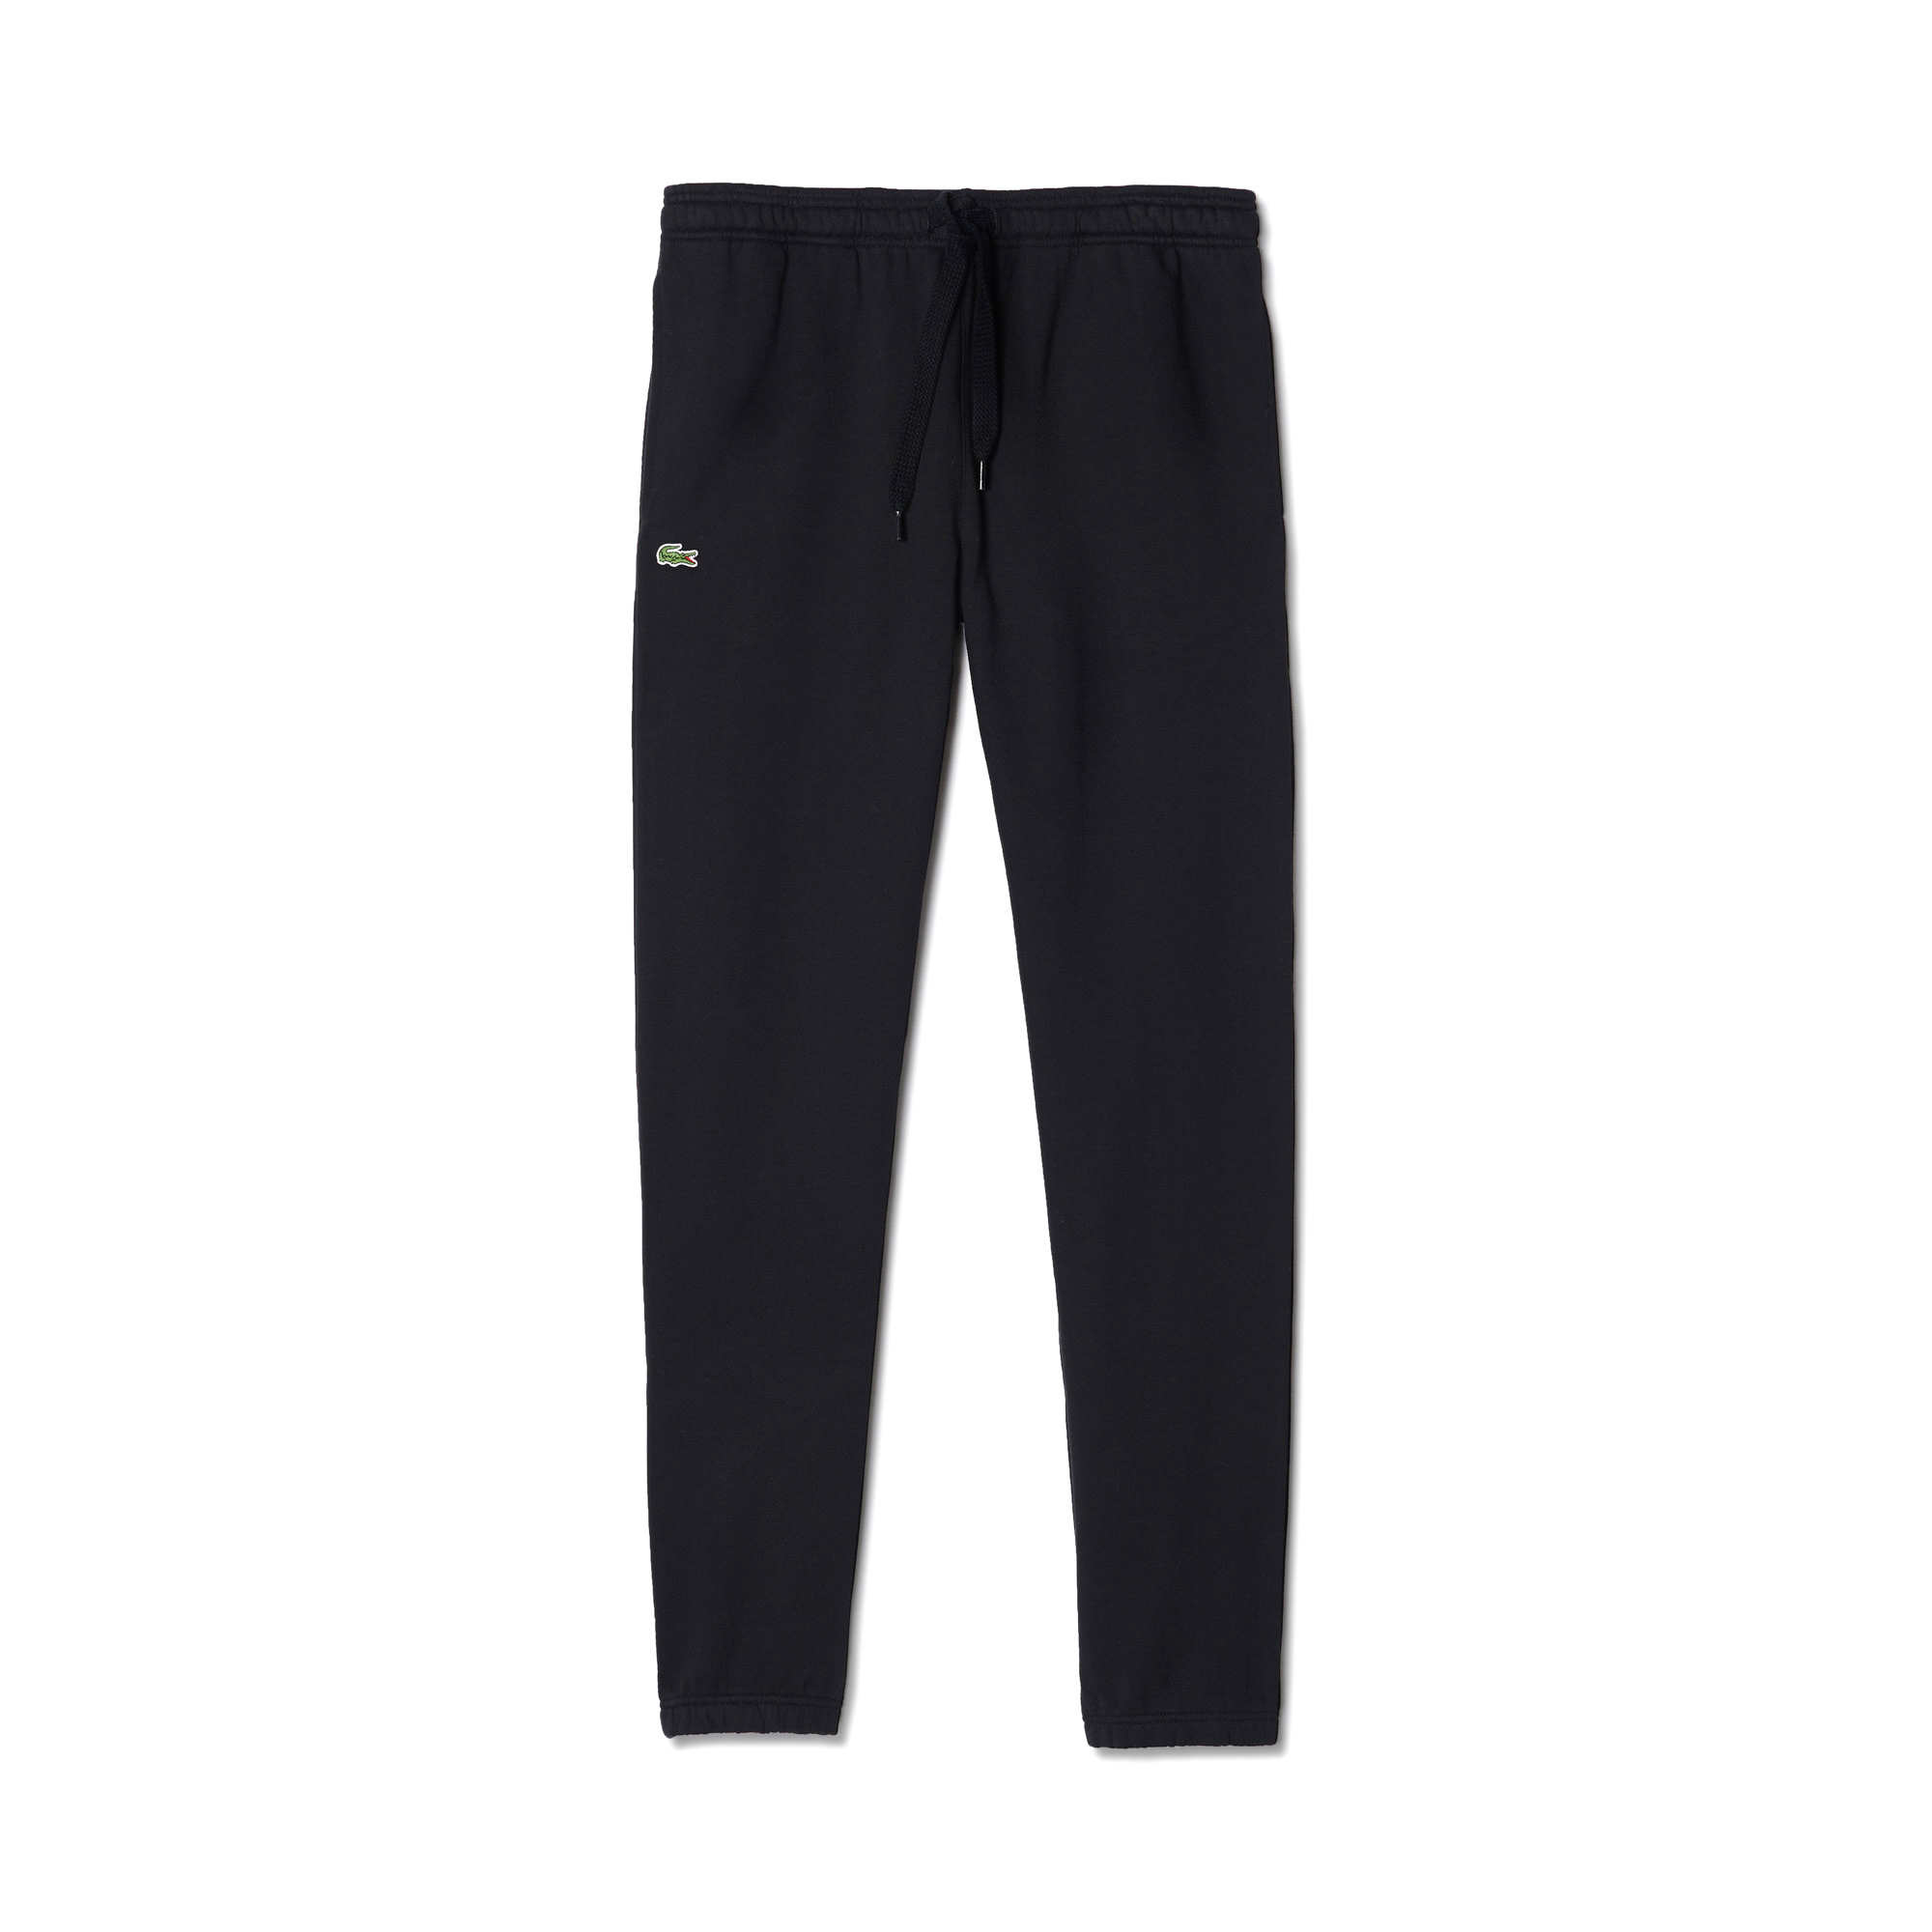 Спортивные штаны Lacoste LACOSTE, размер 46, цвет черный XH7611 - фото 3